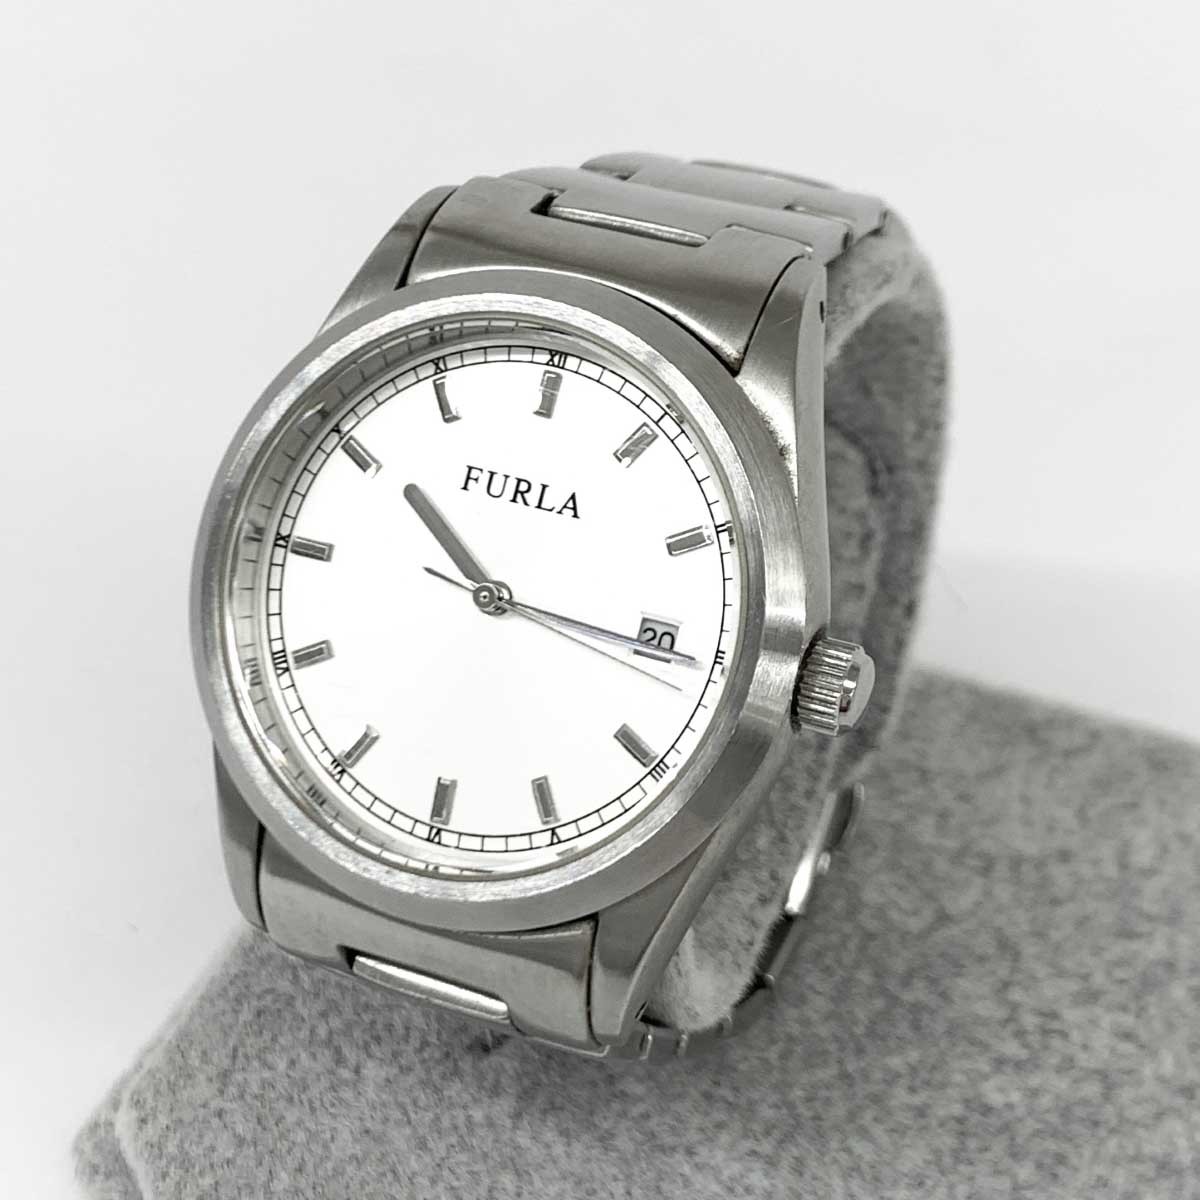 ◆FURLA フルラ 腕時計 クオーツ◆ シルバーカラー SS レディース ウォッチ watch